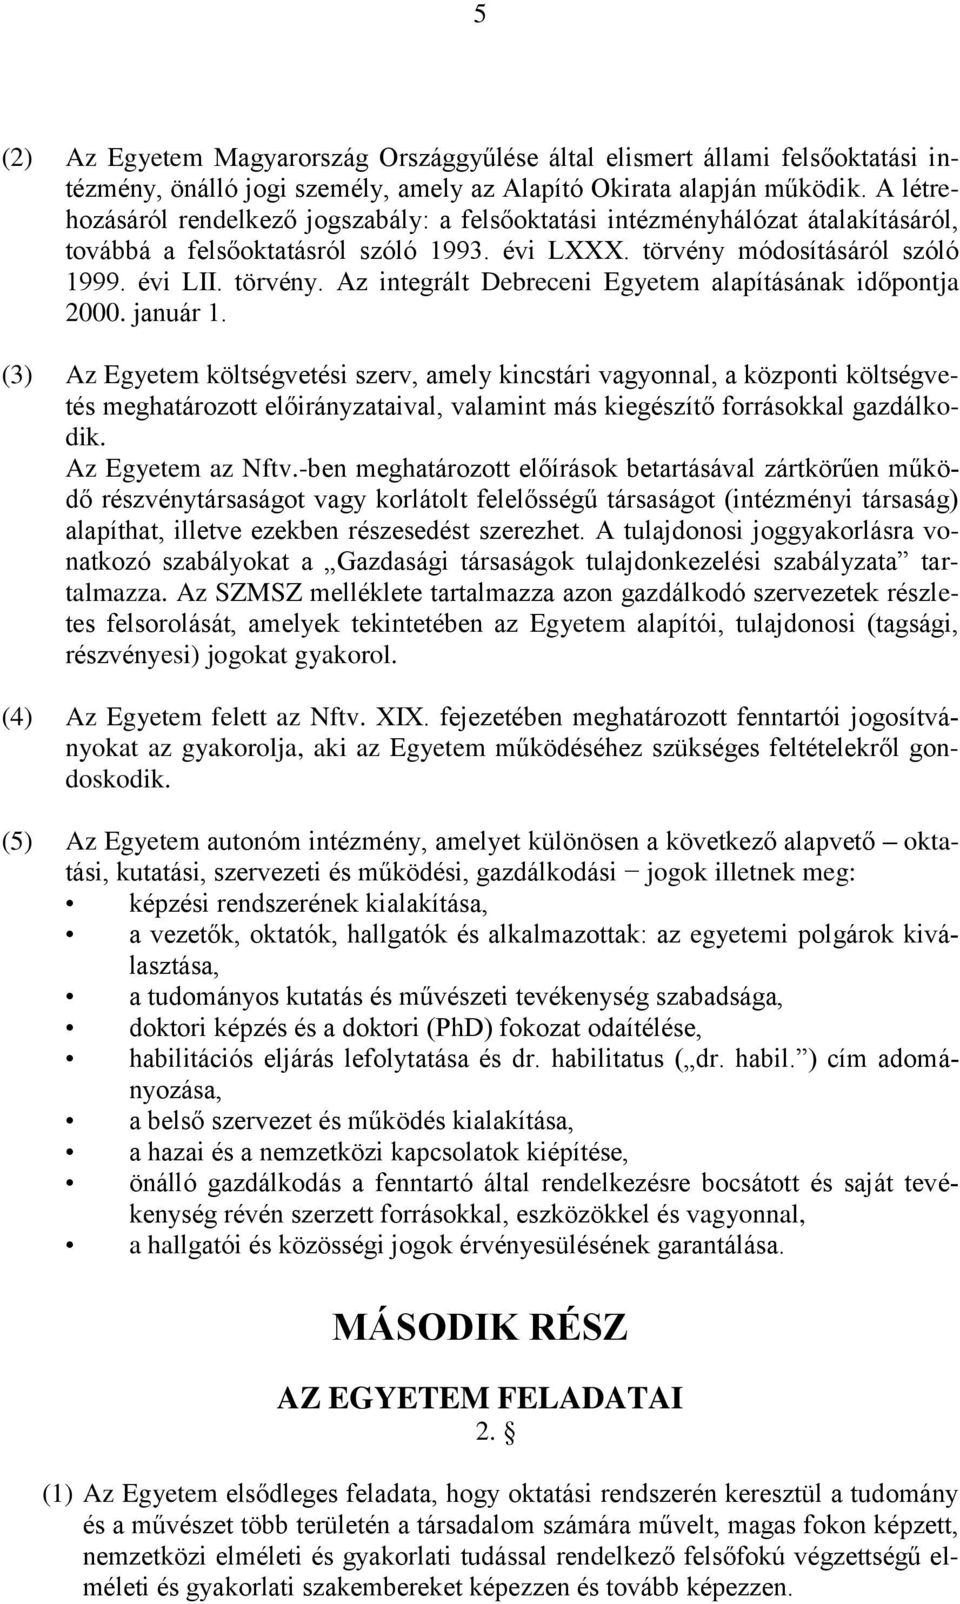 módosításáról szóló 1999. évi LII. törvény. Az integrált Debreceni Egyetem alapításának időpontja 2000. január 1.